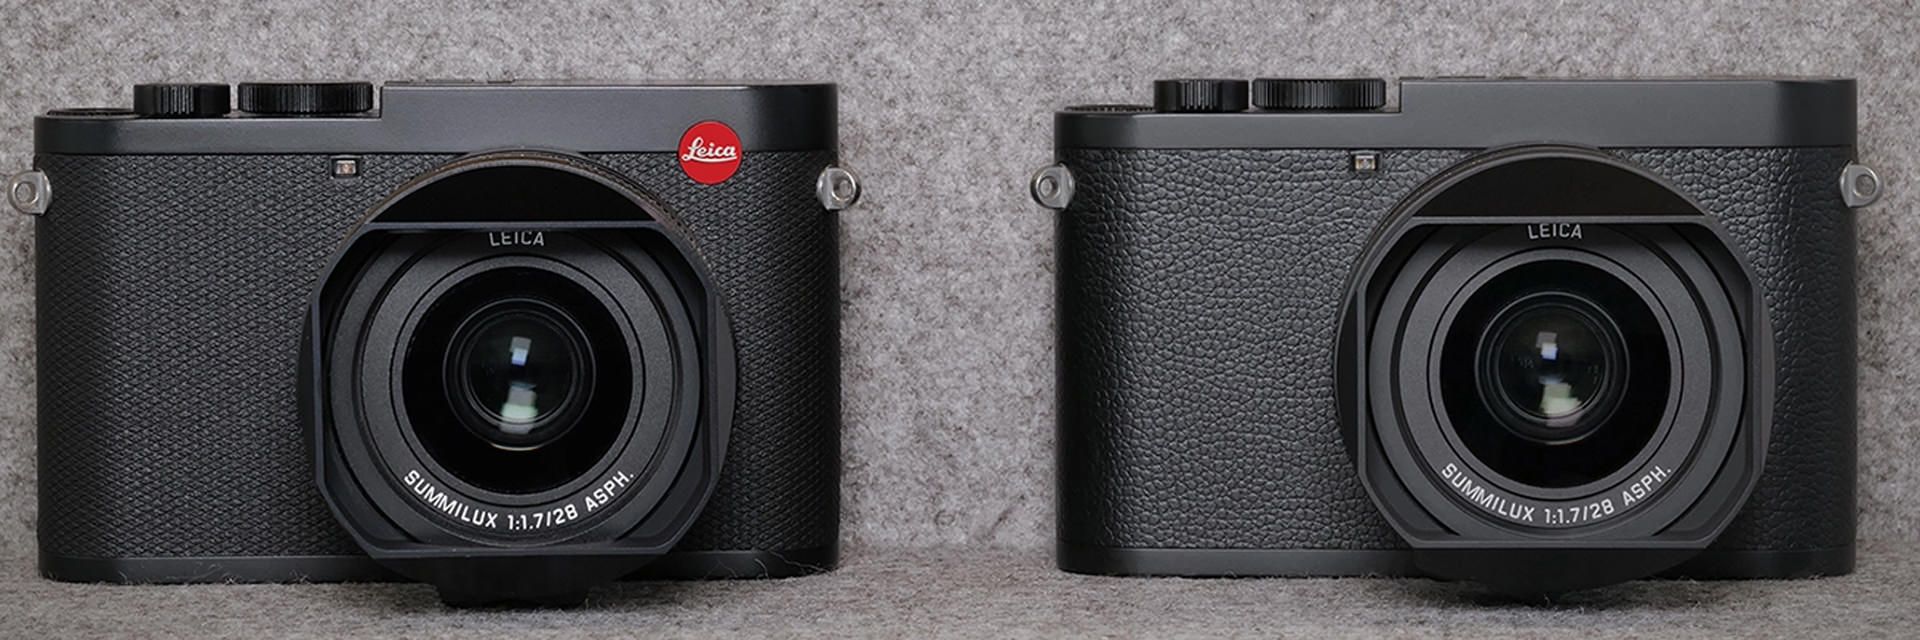 مقایسه دوربین لایکا کیو 2 مونوکروم / Leica Q2 Monochrom با مدل عادی